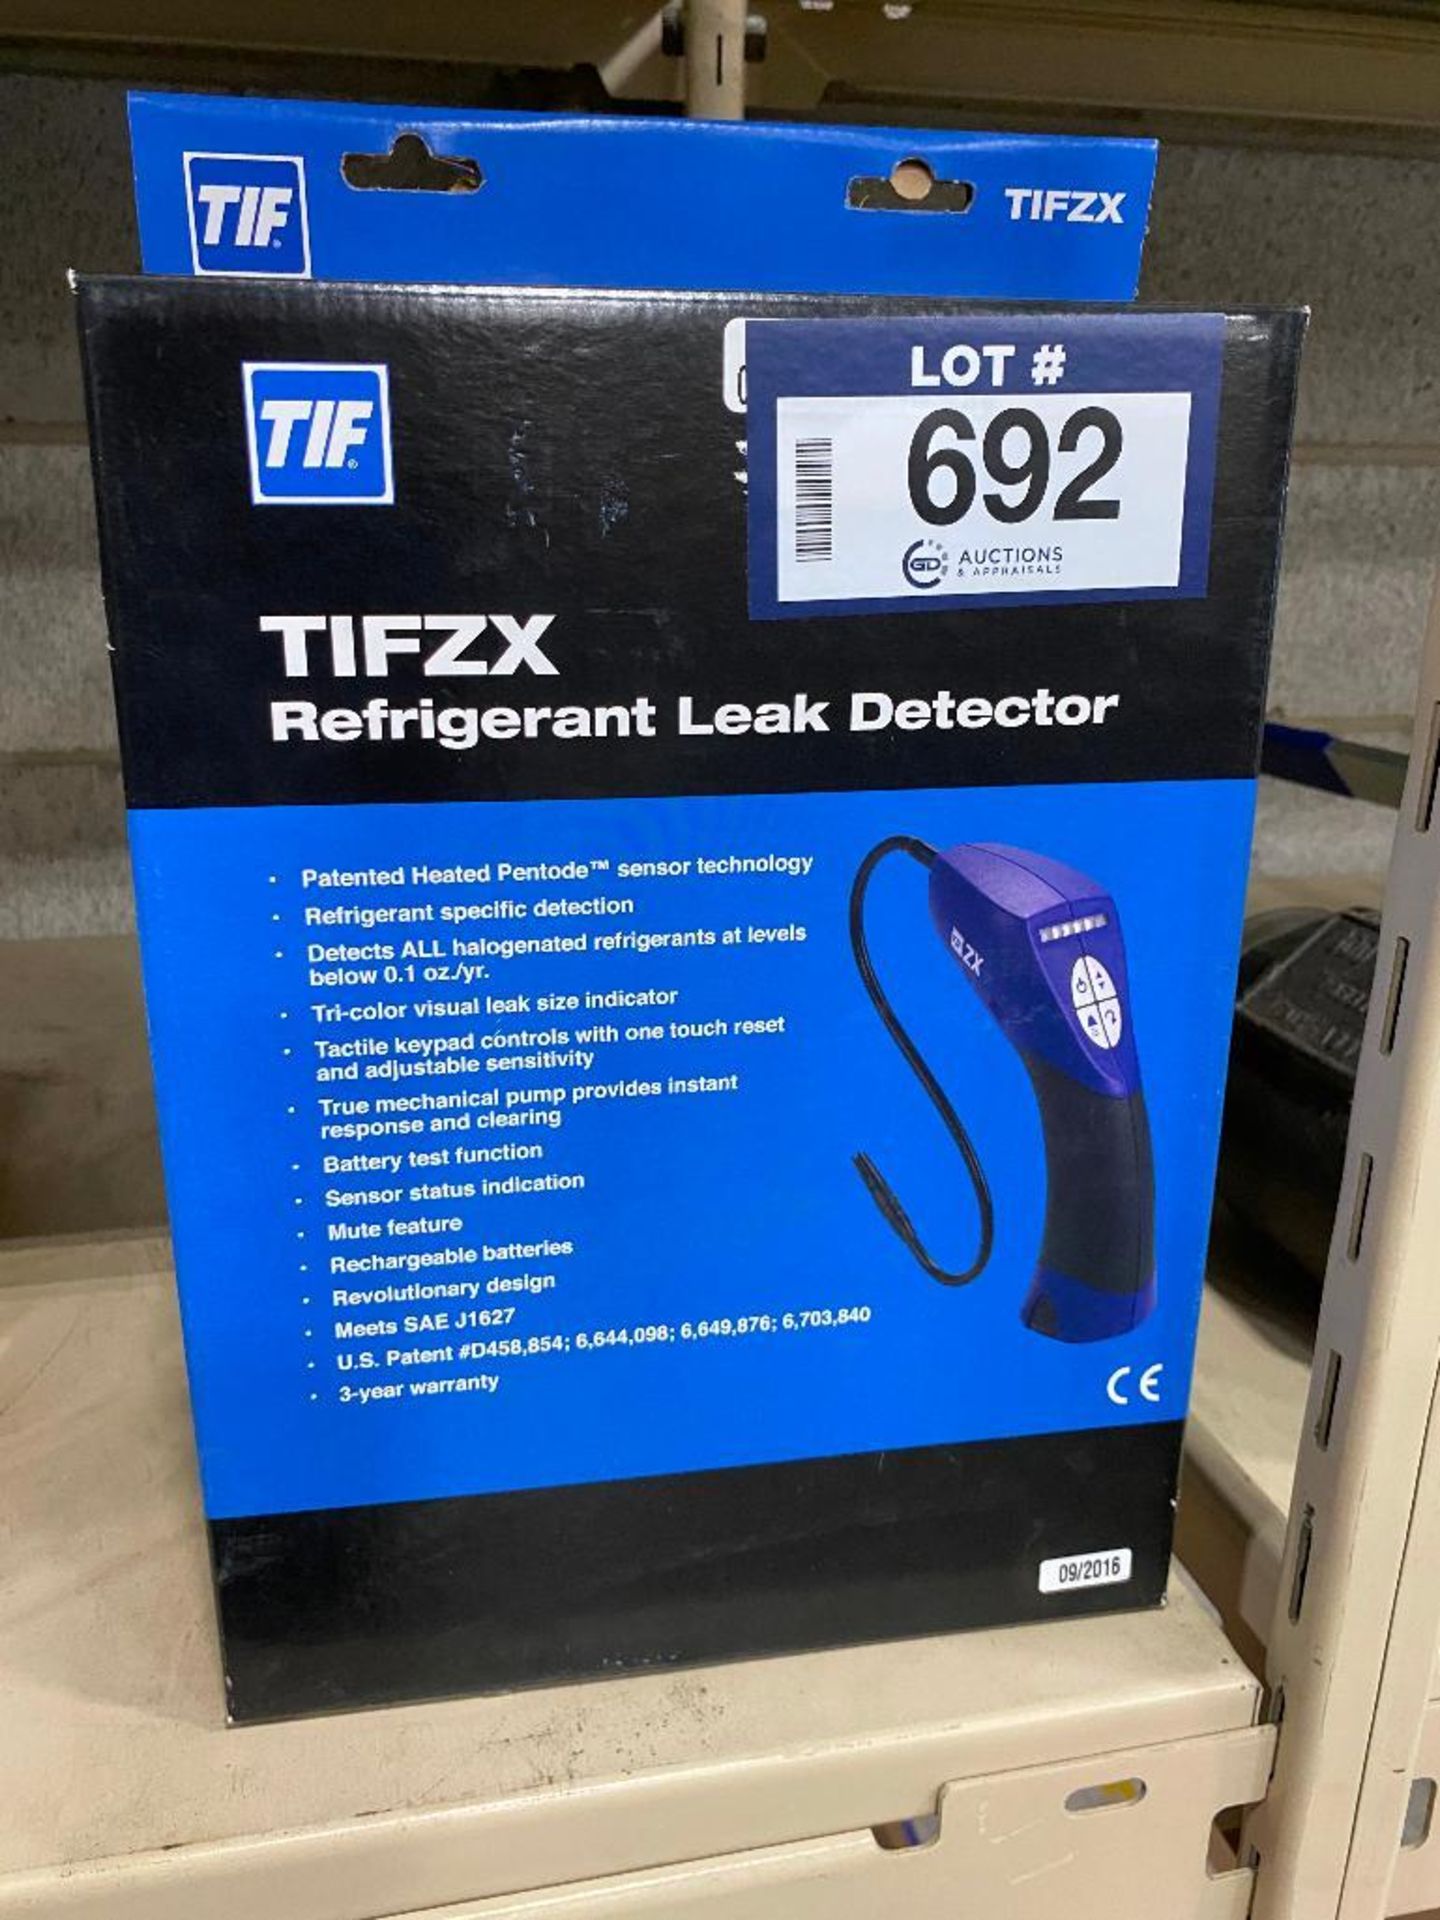 TIFZX Refrigerant Leak Detector - Image 3 of 3